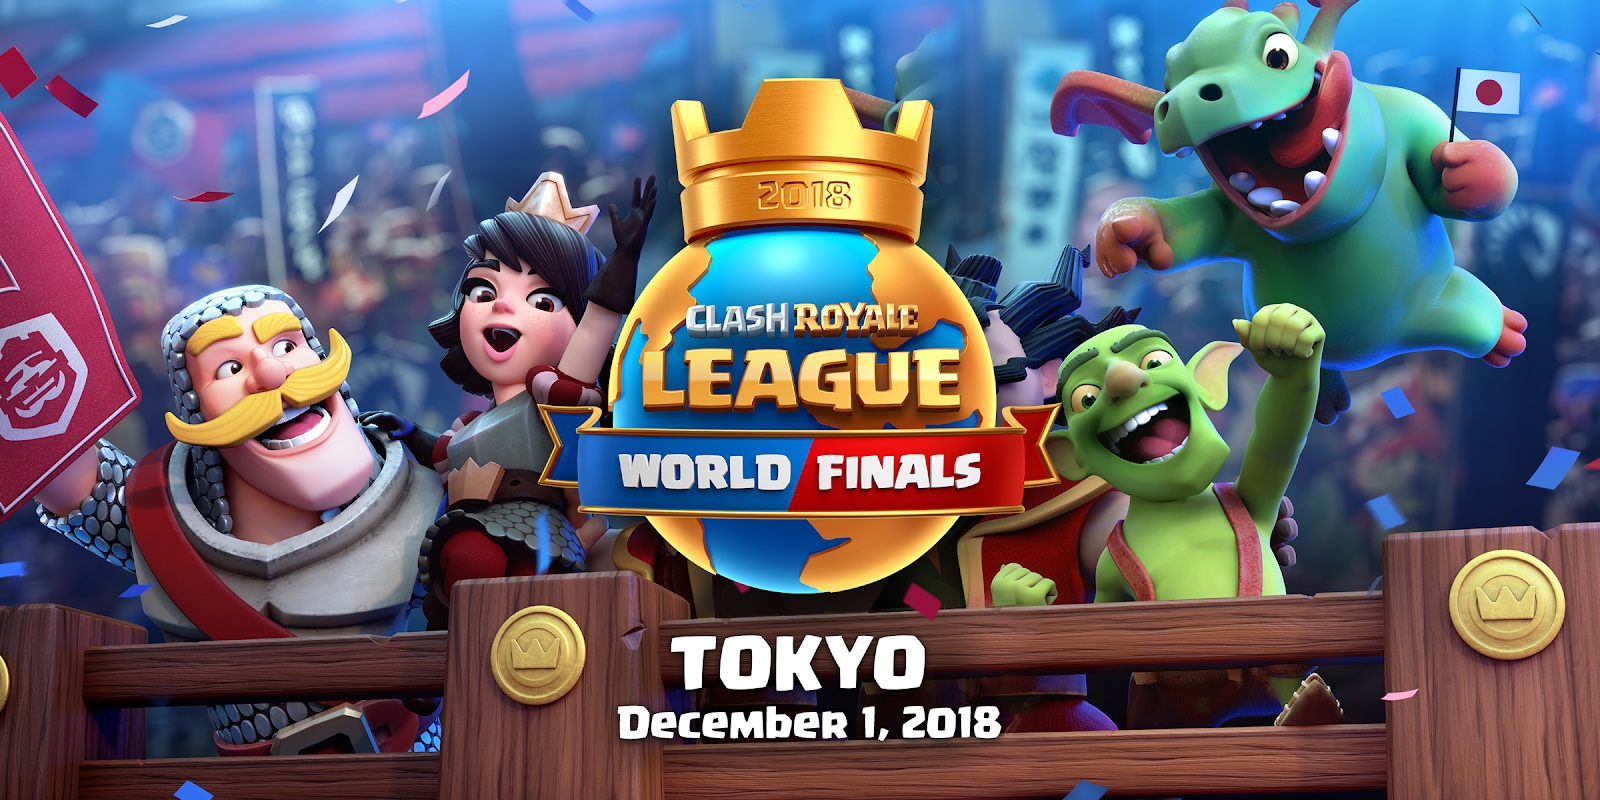 Clash Royale League World Finals 2018